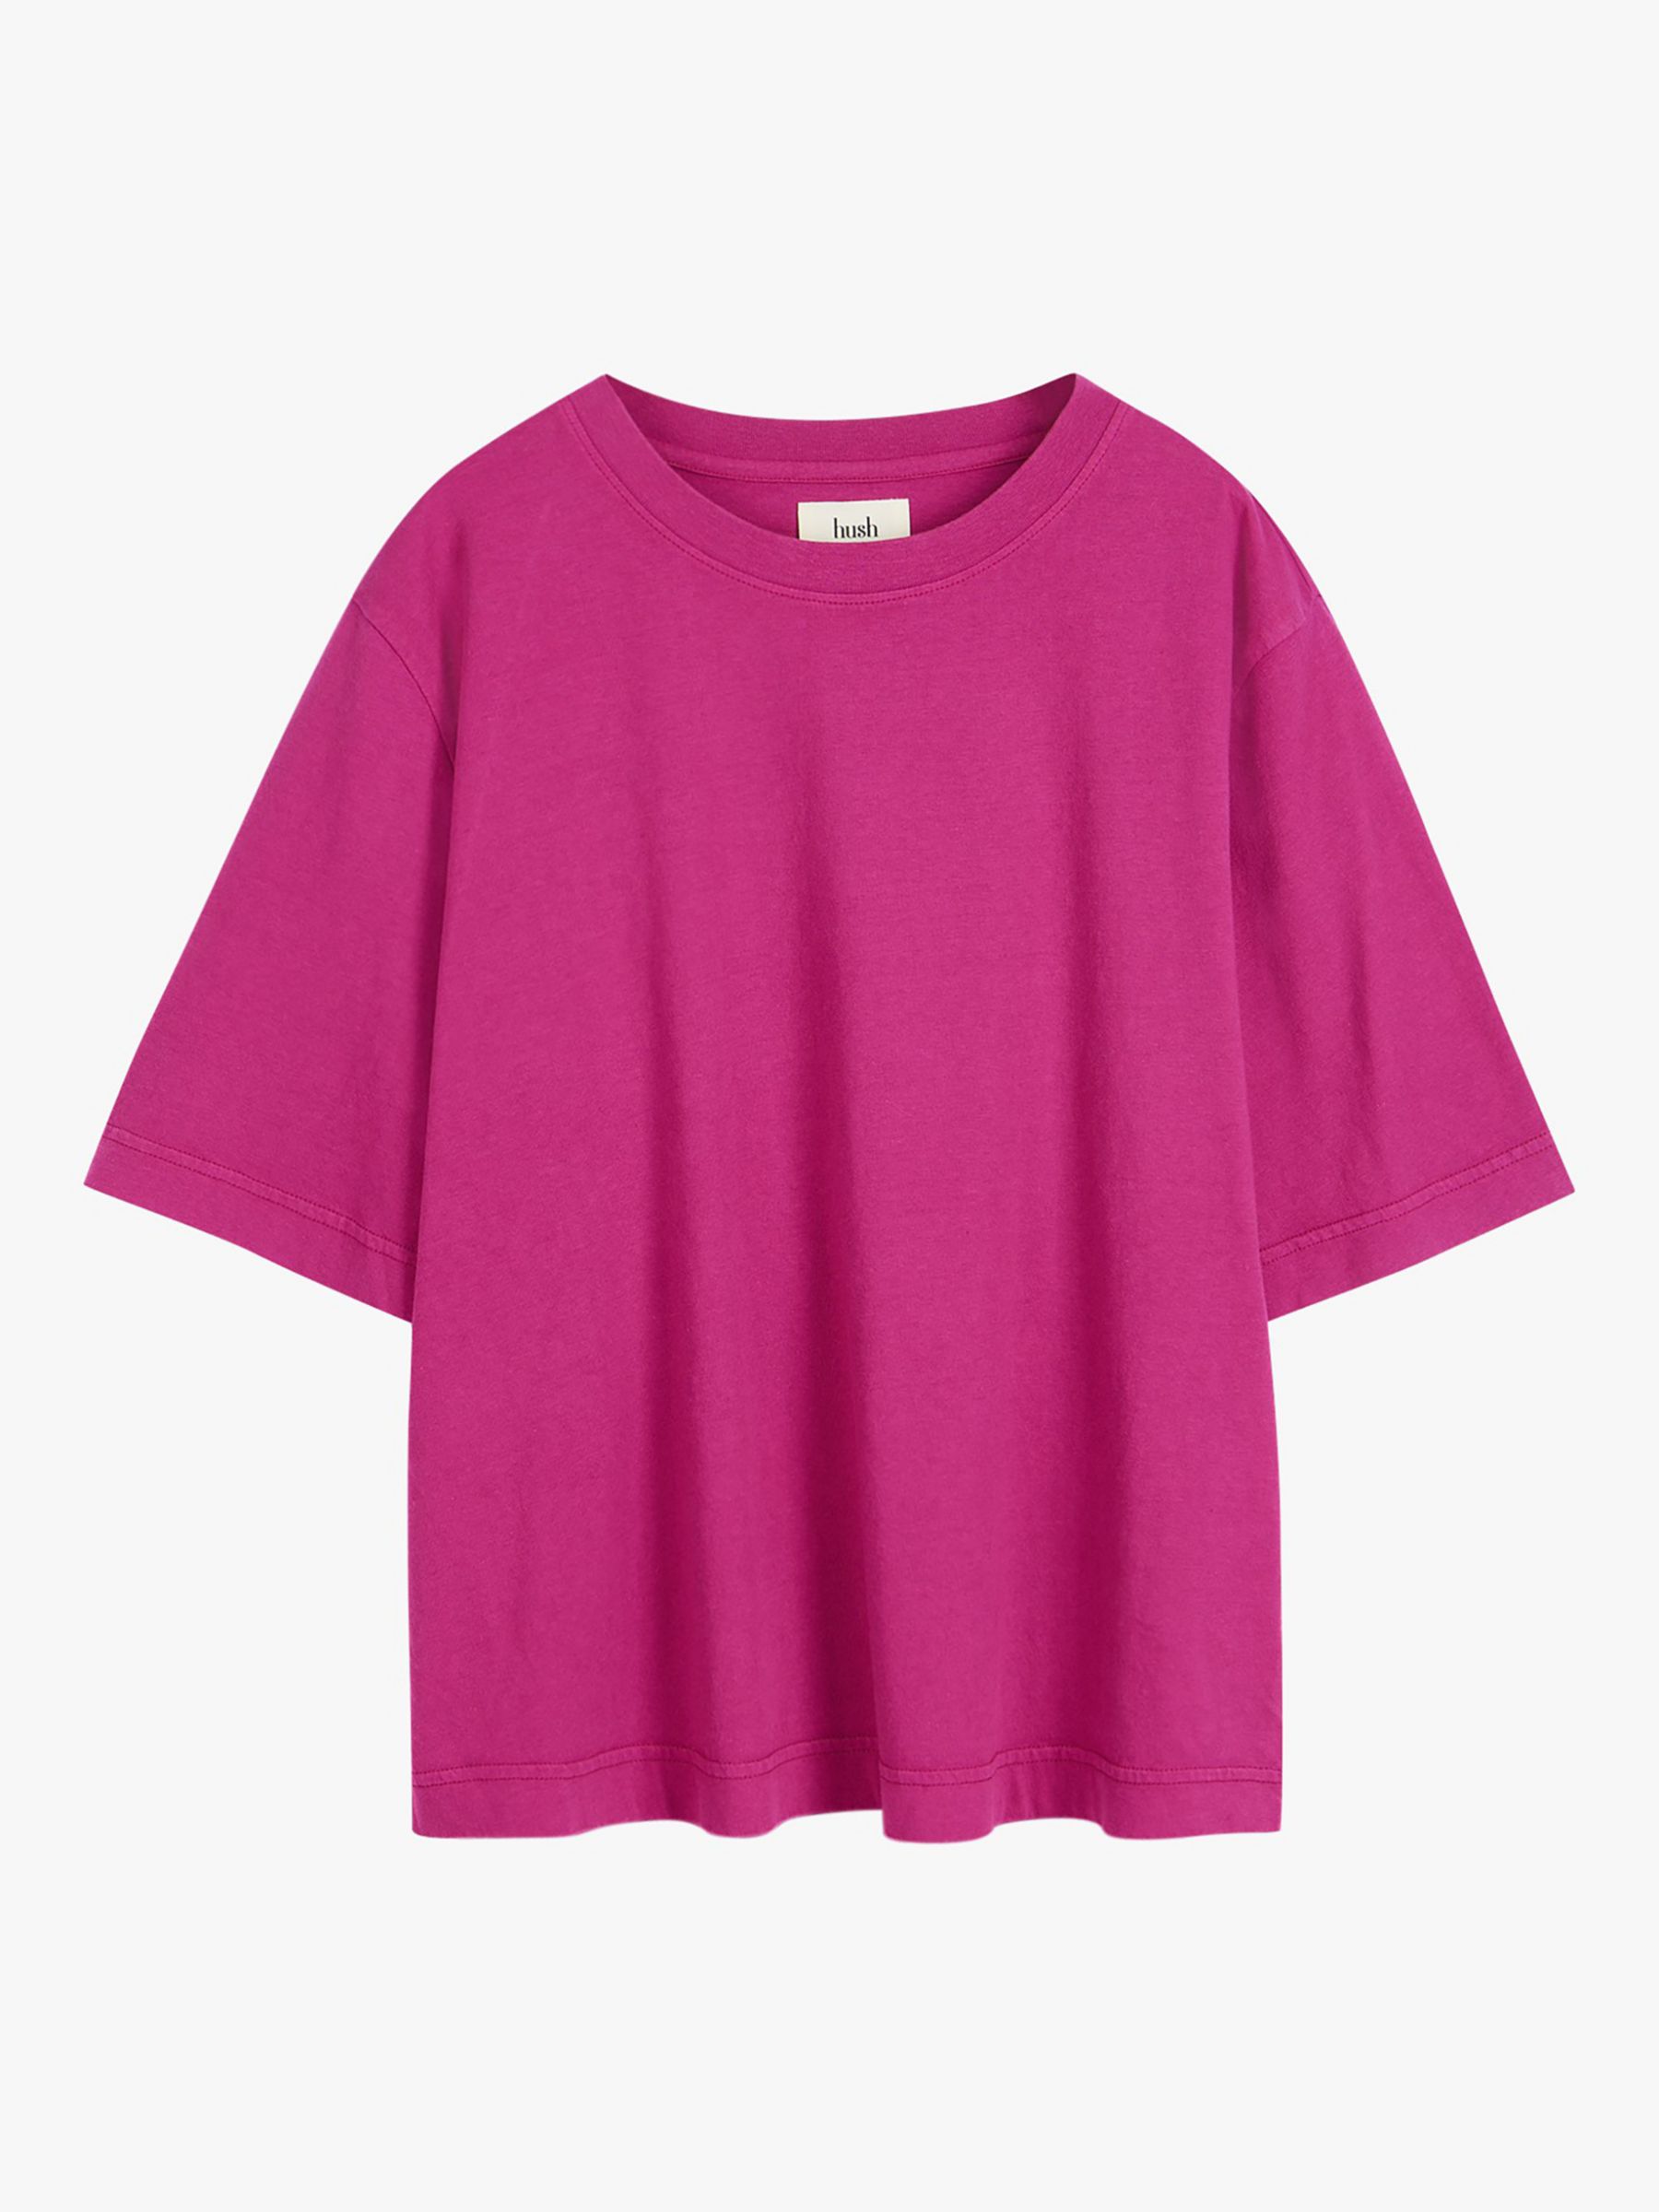 HUSH Cathy Crew Neck Boxy T-Shirt, Poppy Pink, L